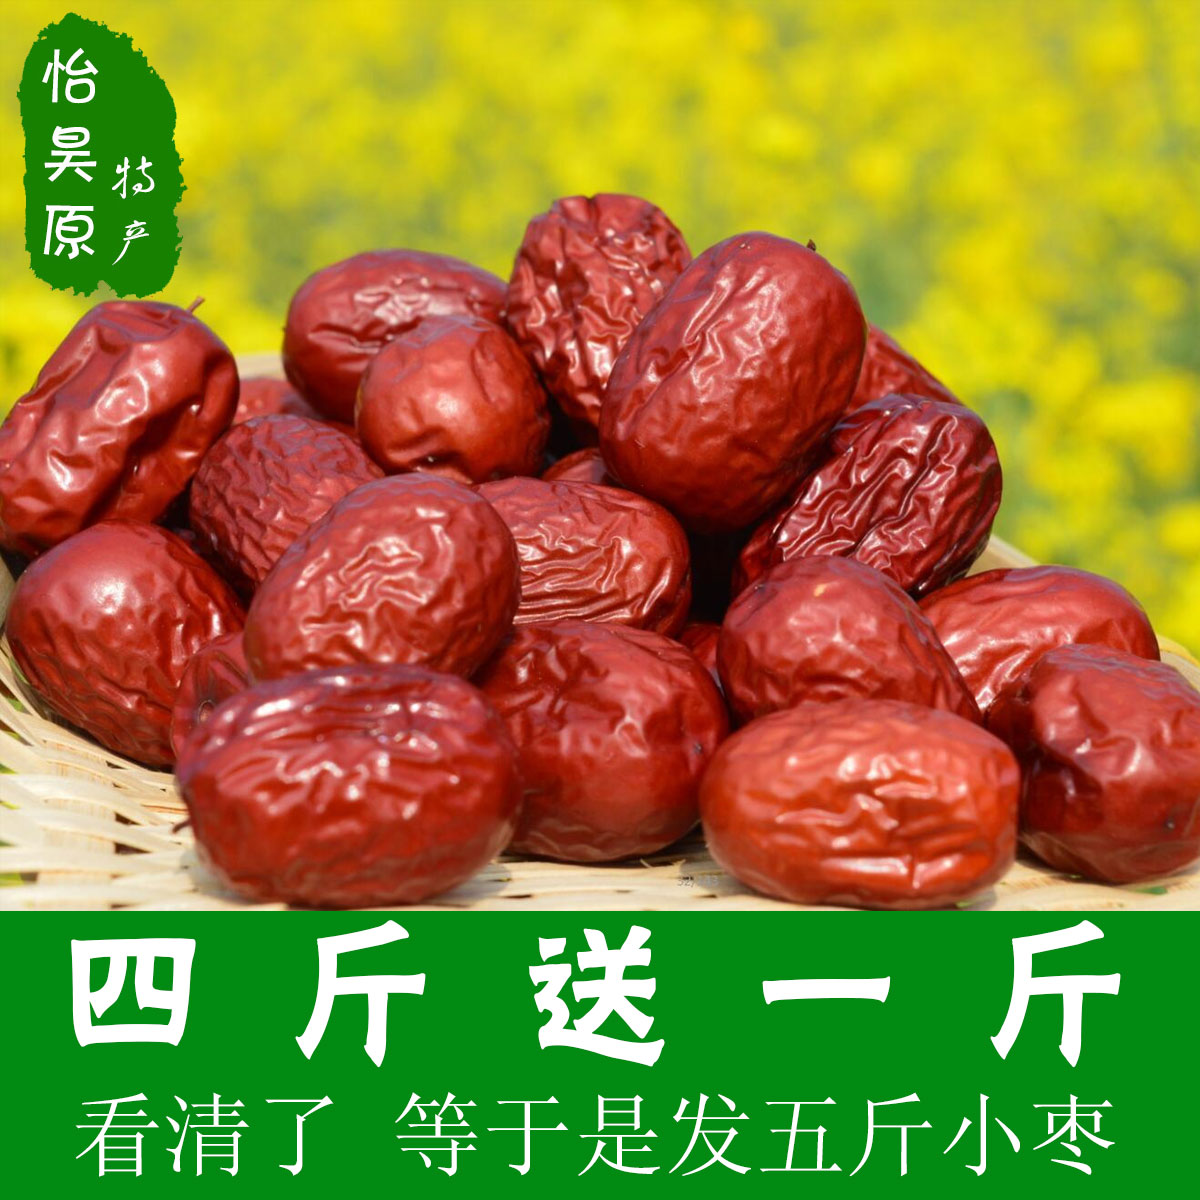 【天天特价】农家小枣500g 红枣子批发 休闲零食干果 非和田红枣